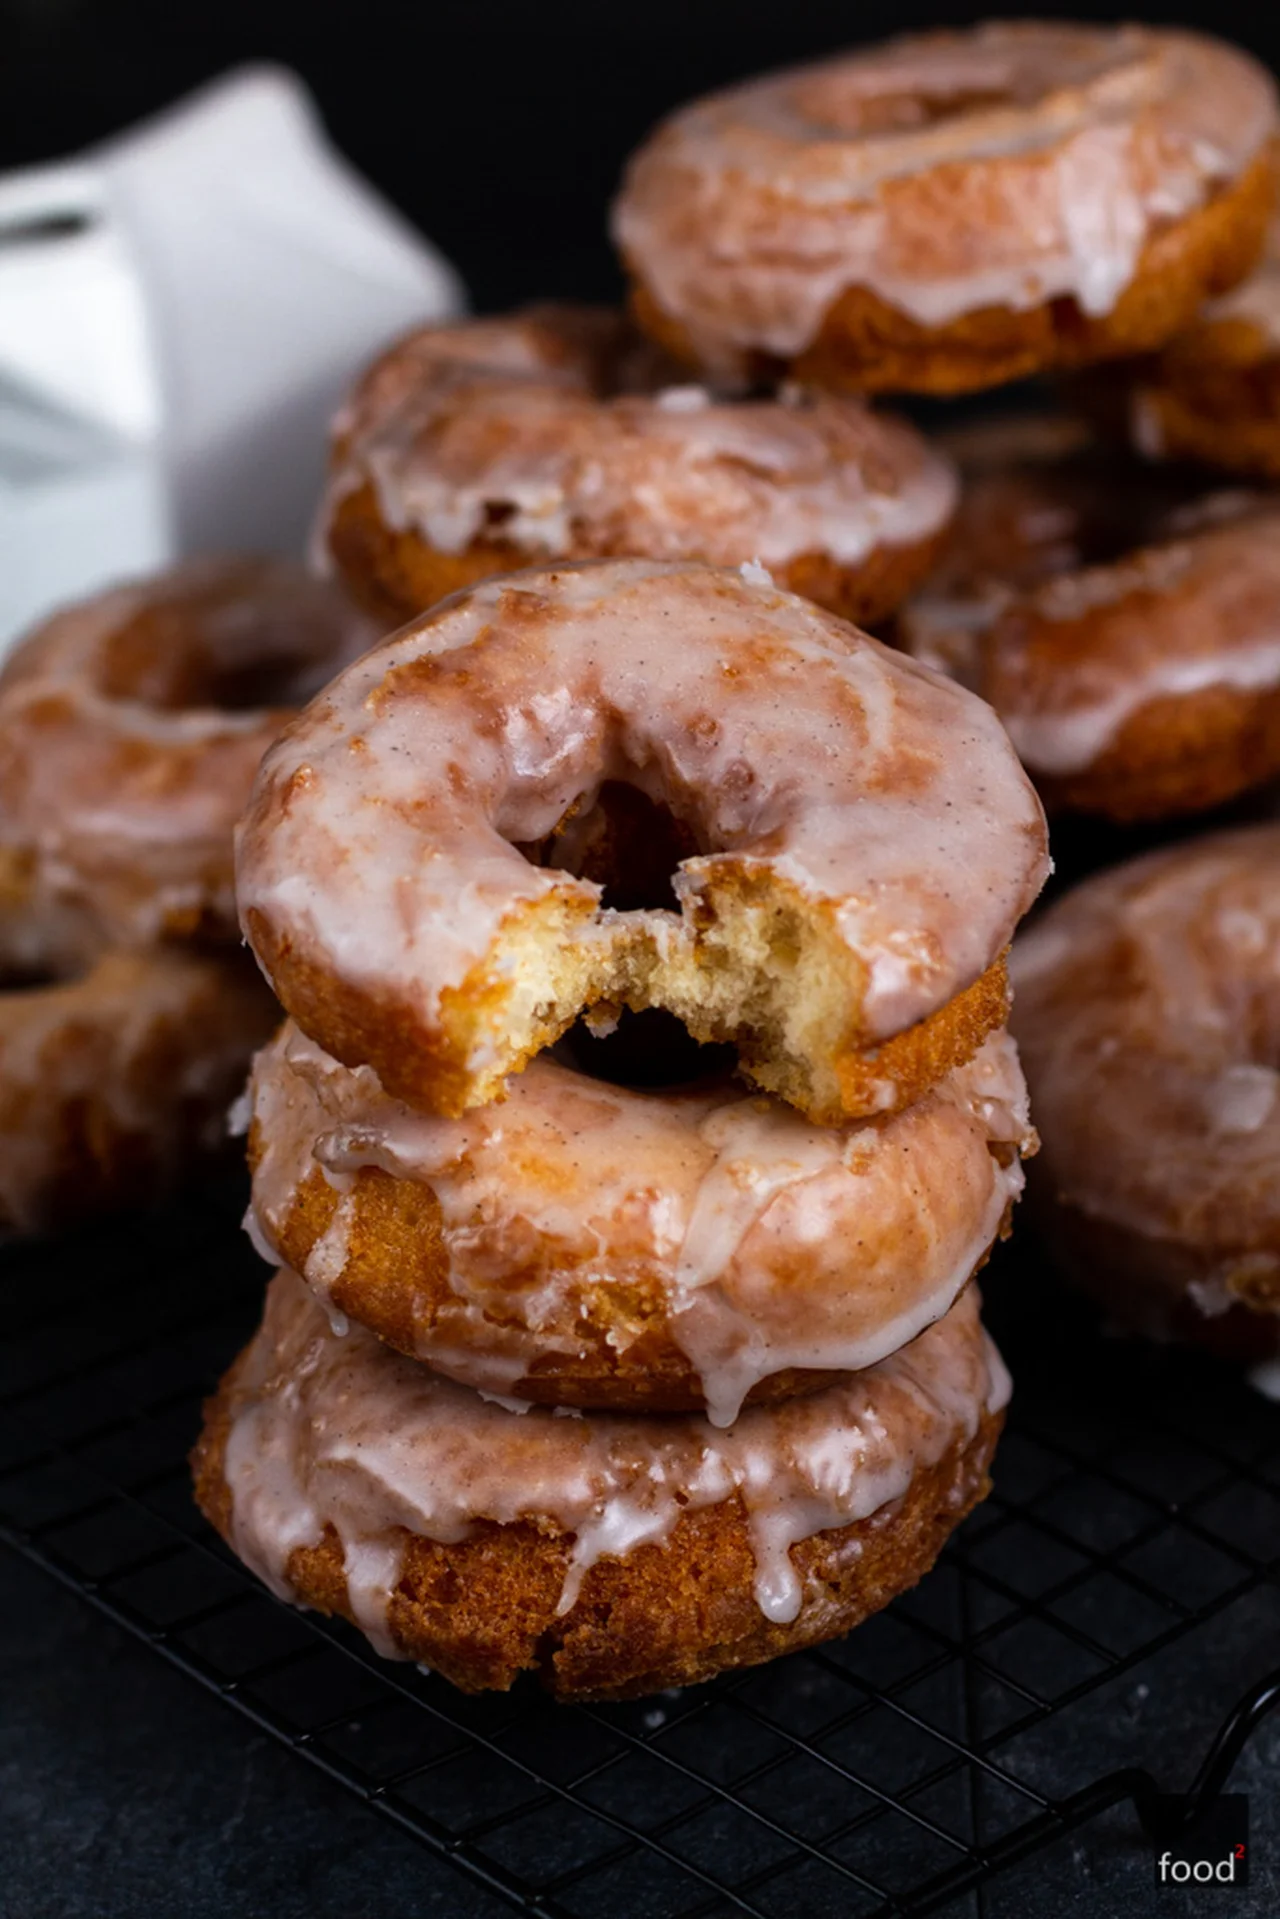 Old-fashioned doughnuts - amerykańskie pączki na maślance